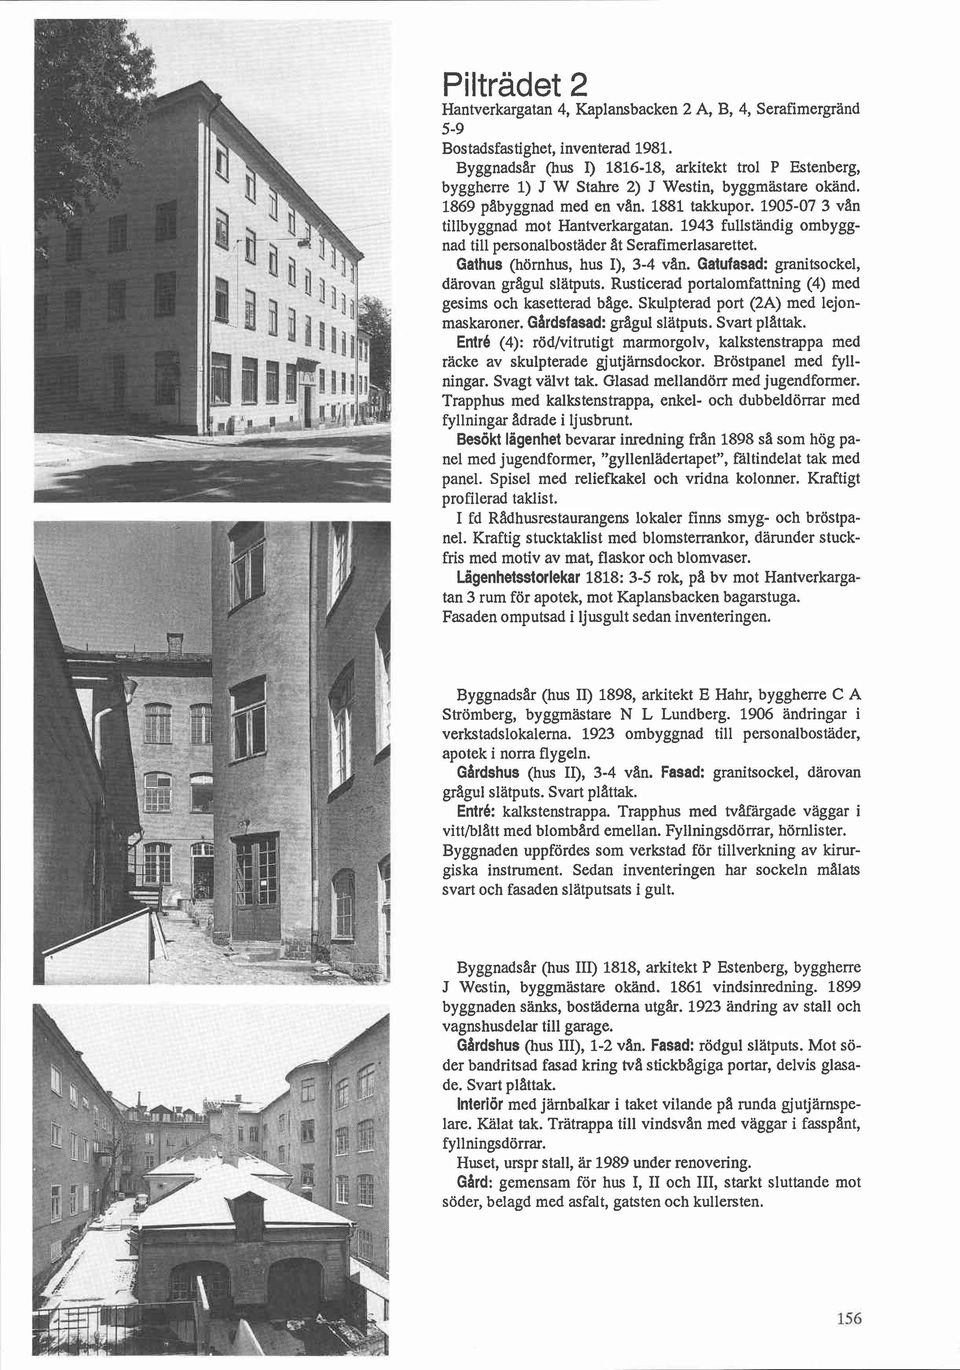 1943 fullständig ombyggnad till personalbostäder ilt Serafimerlasarettet. Gathus (hörnhus, hus I), 3-4 van. Gatufasad: granitsockel, därovan gragul slätputs.